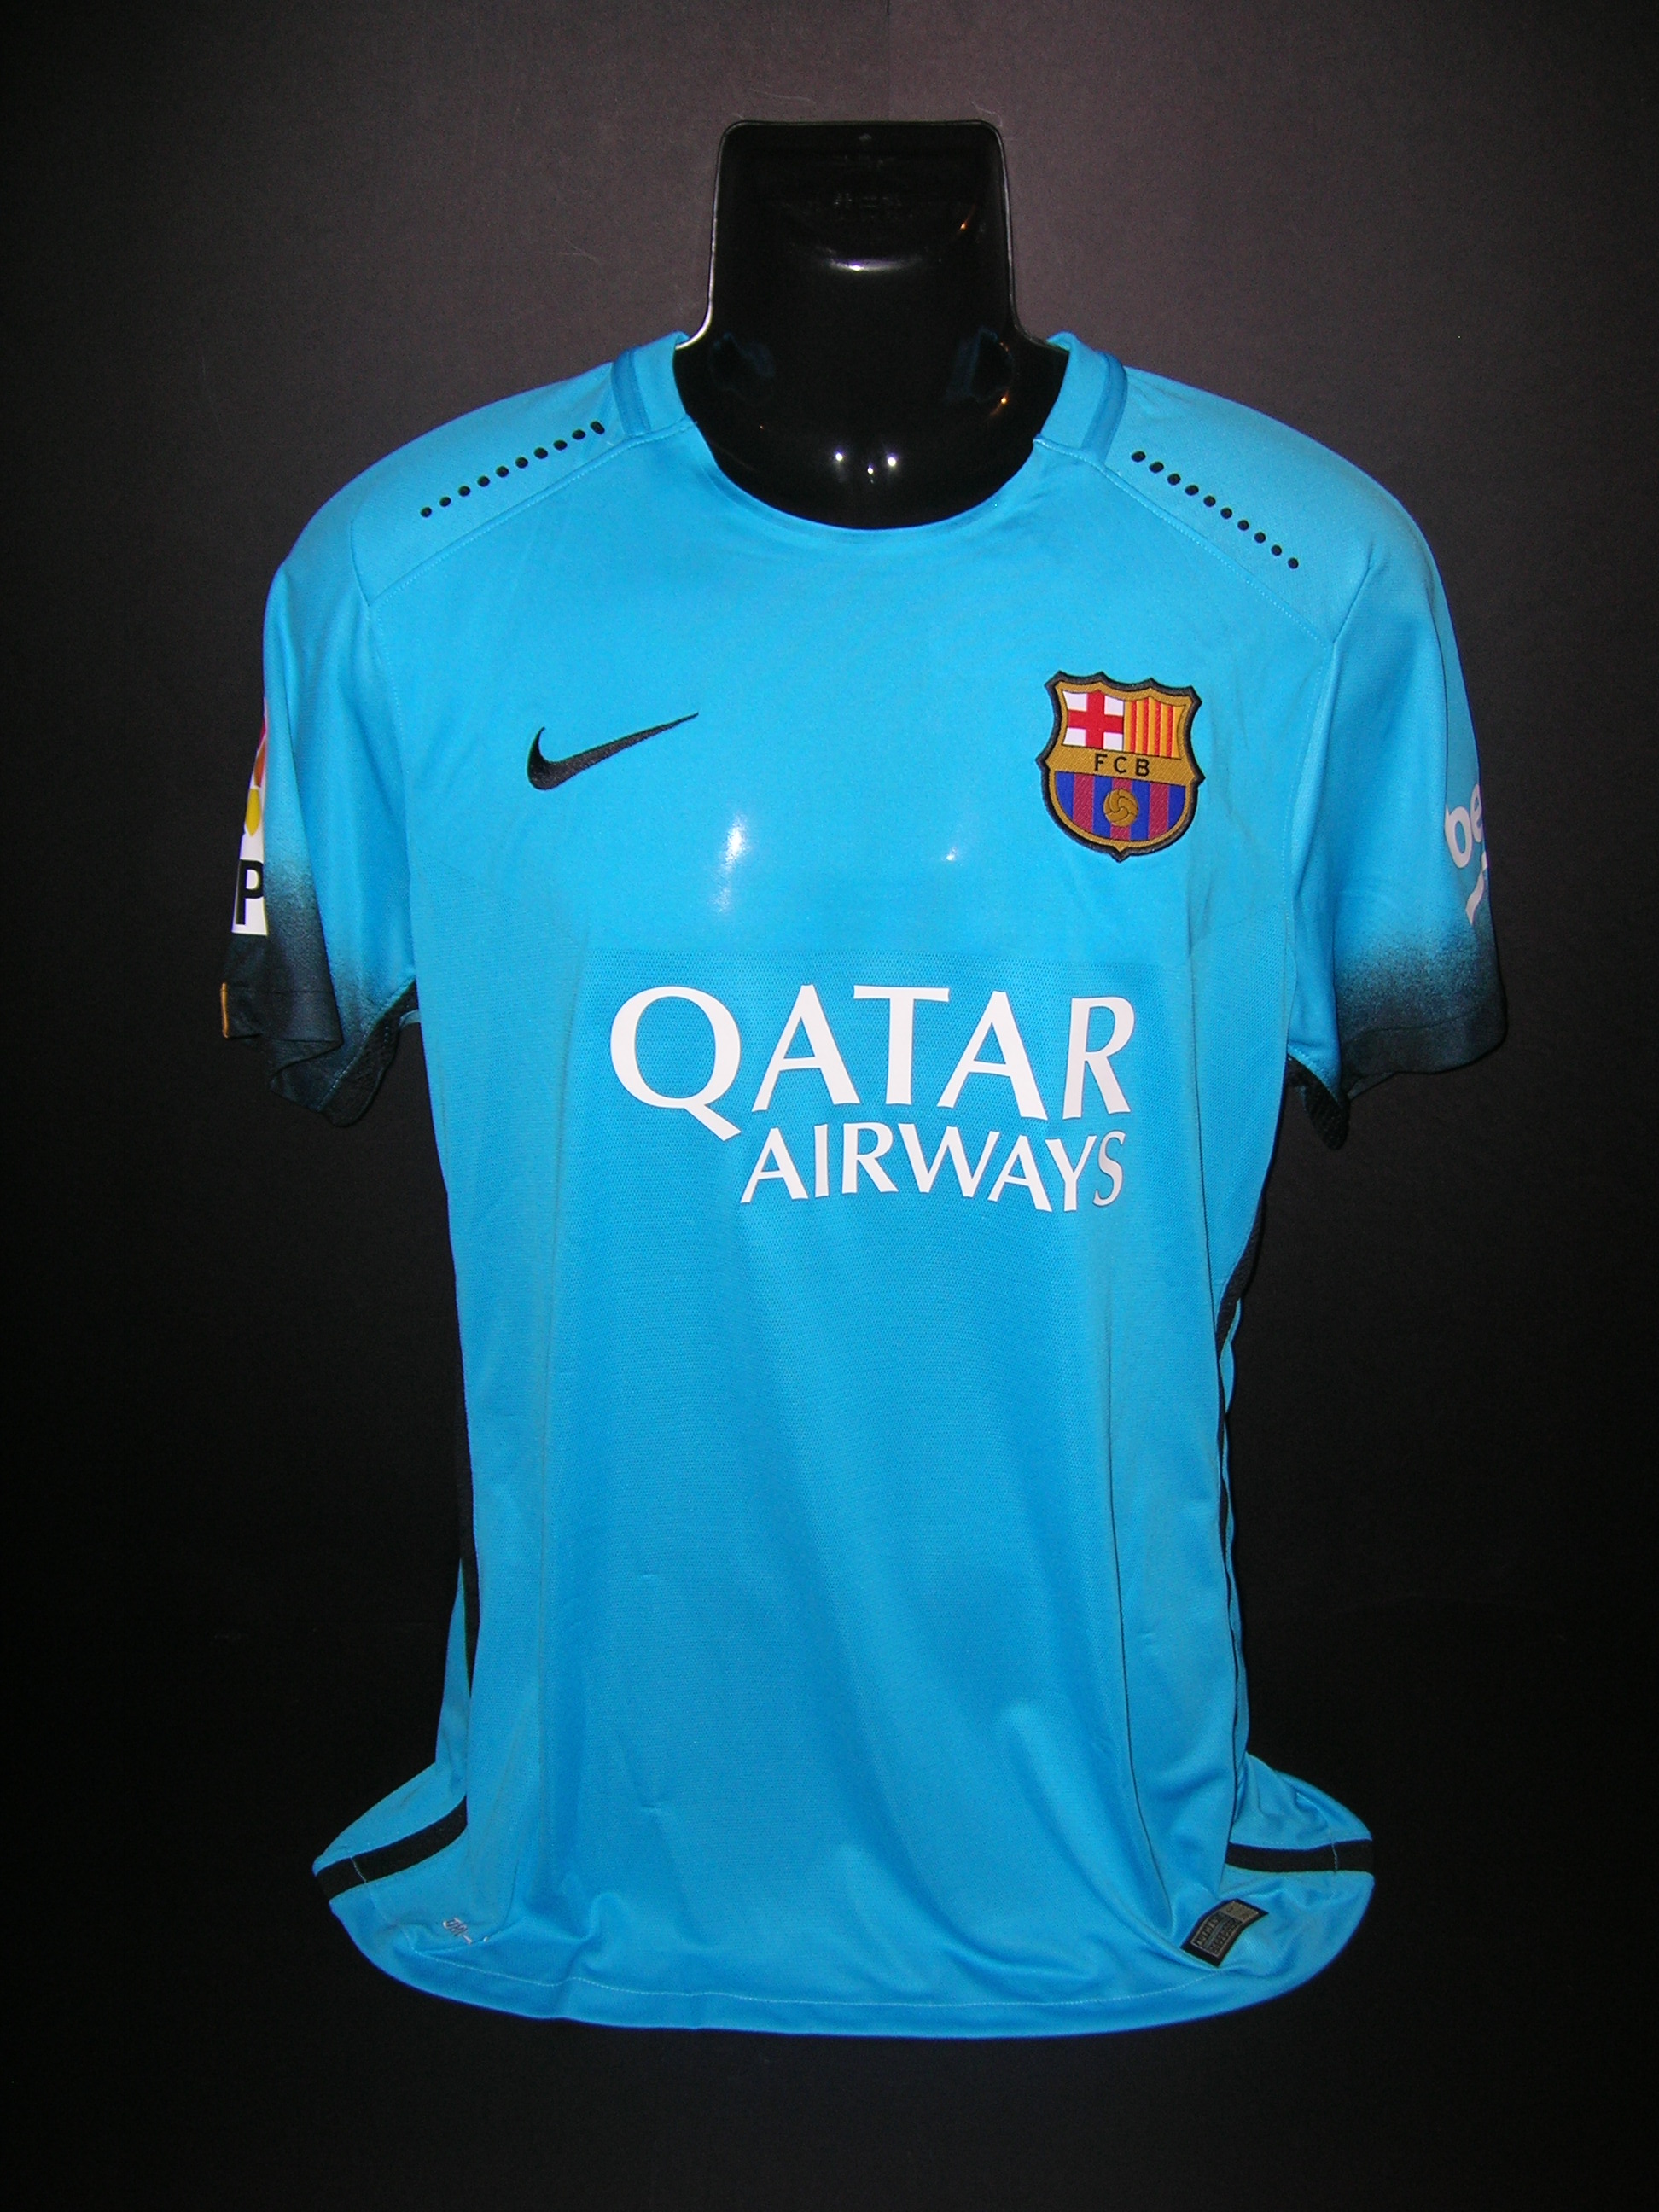 Barcellona  n.9  Suarez  2015  -  449